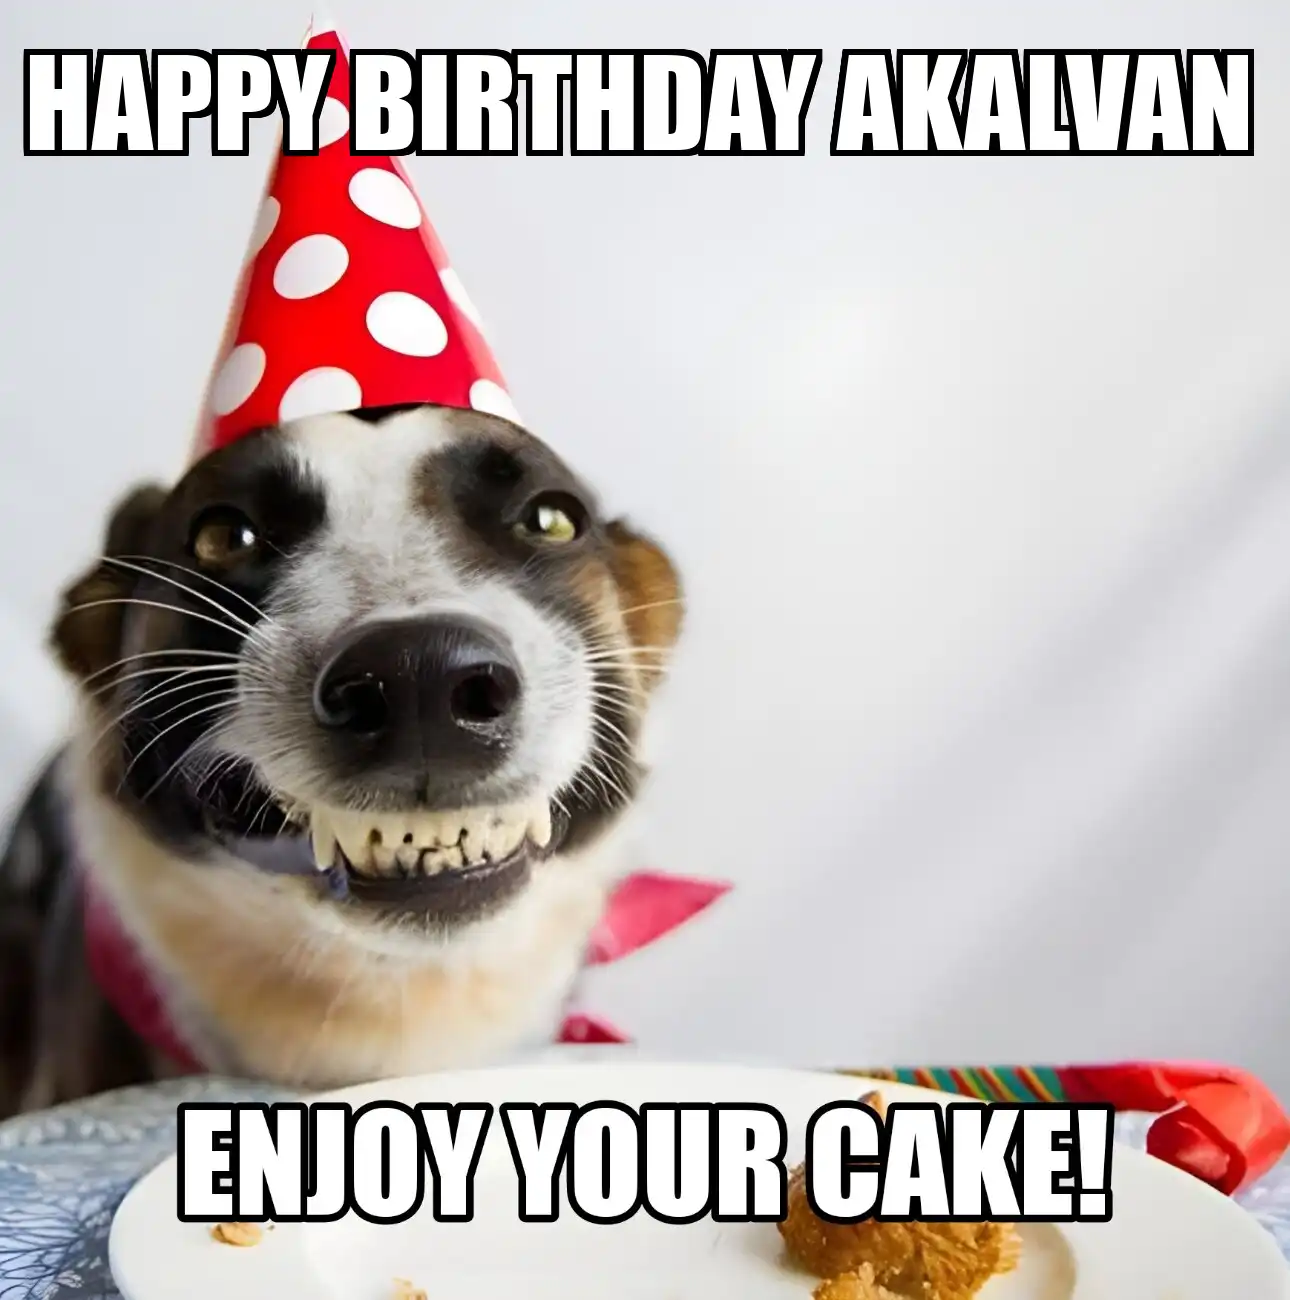 Happy Birthday Akalvan Enjoy Your Cake Dog Meme